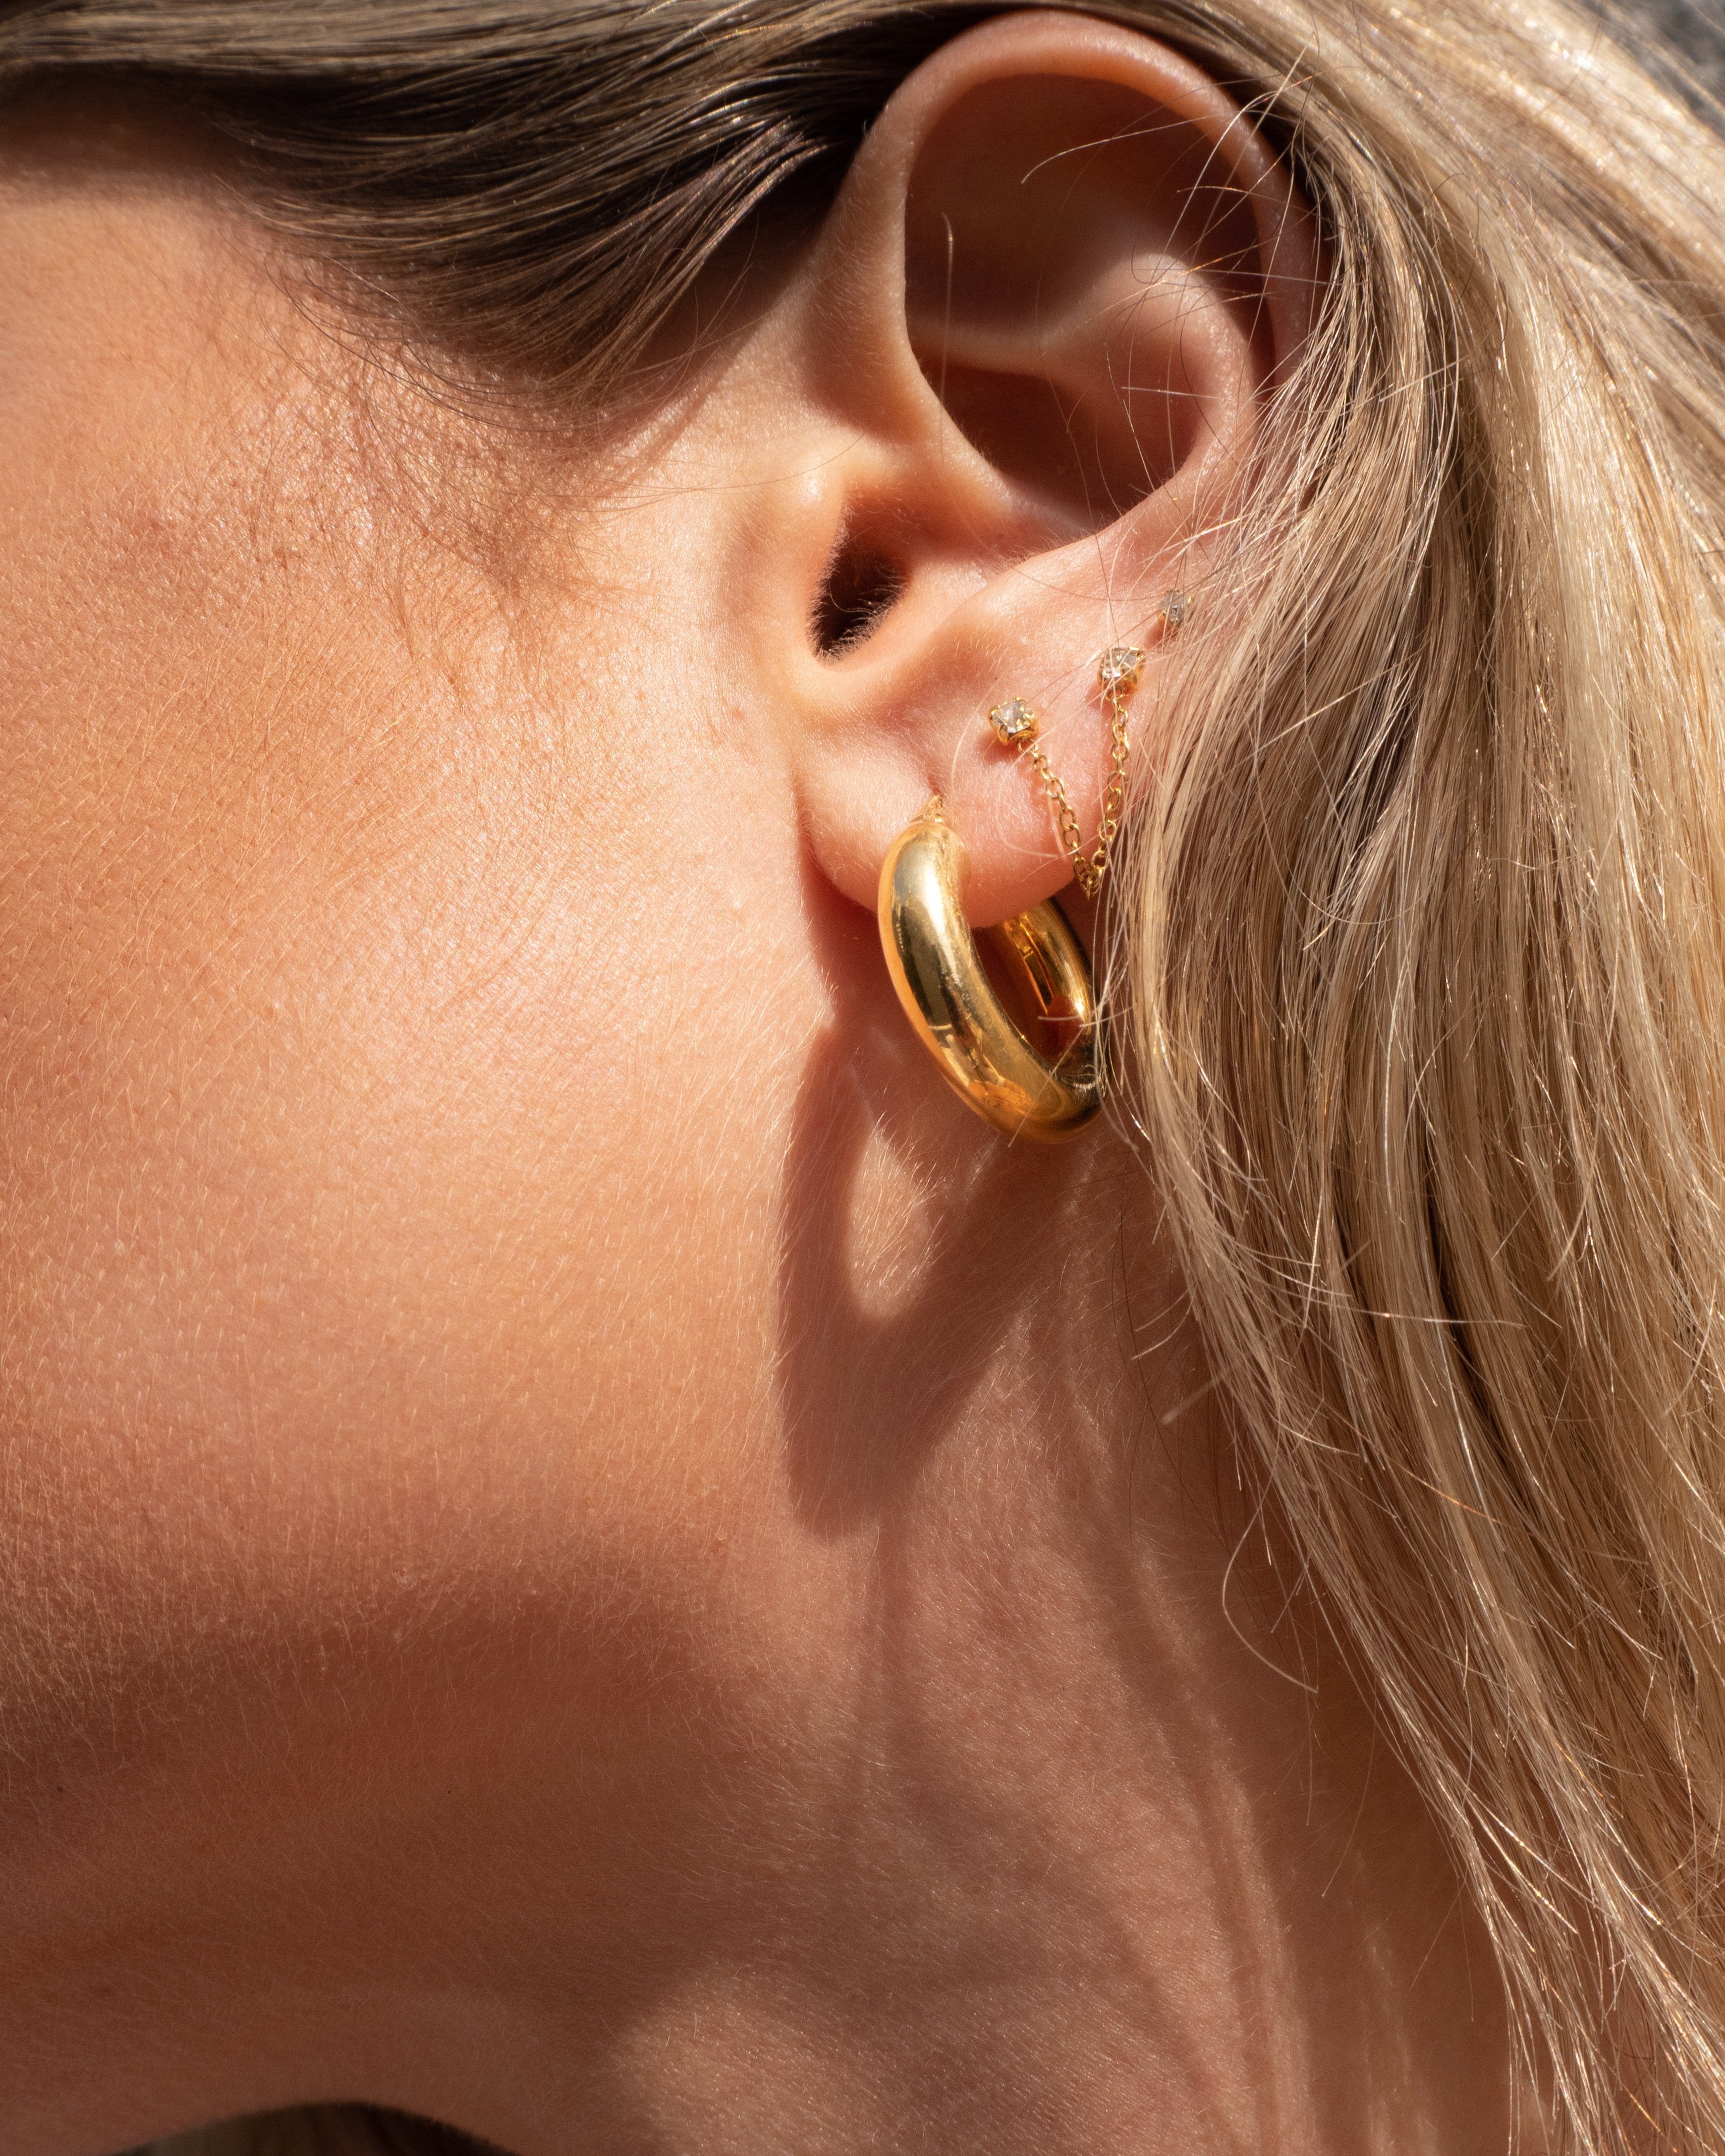 14k Solid Gold CZ Hoop Earring, Second Hole Helix Cartilage Earring, Single  | eBay